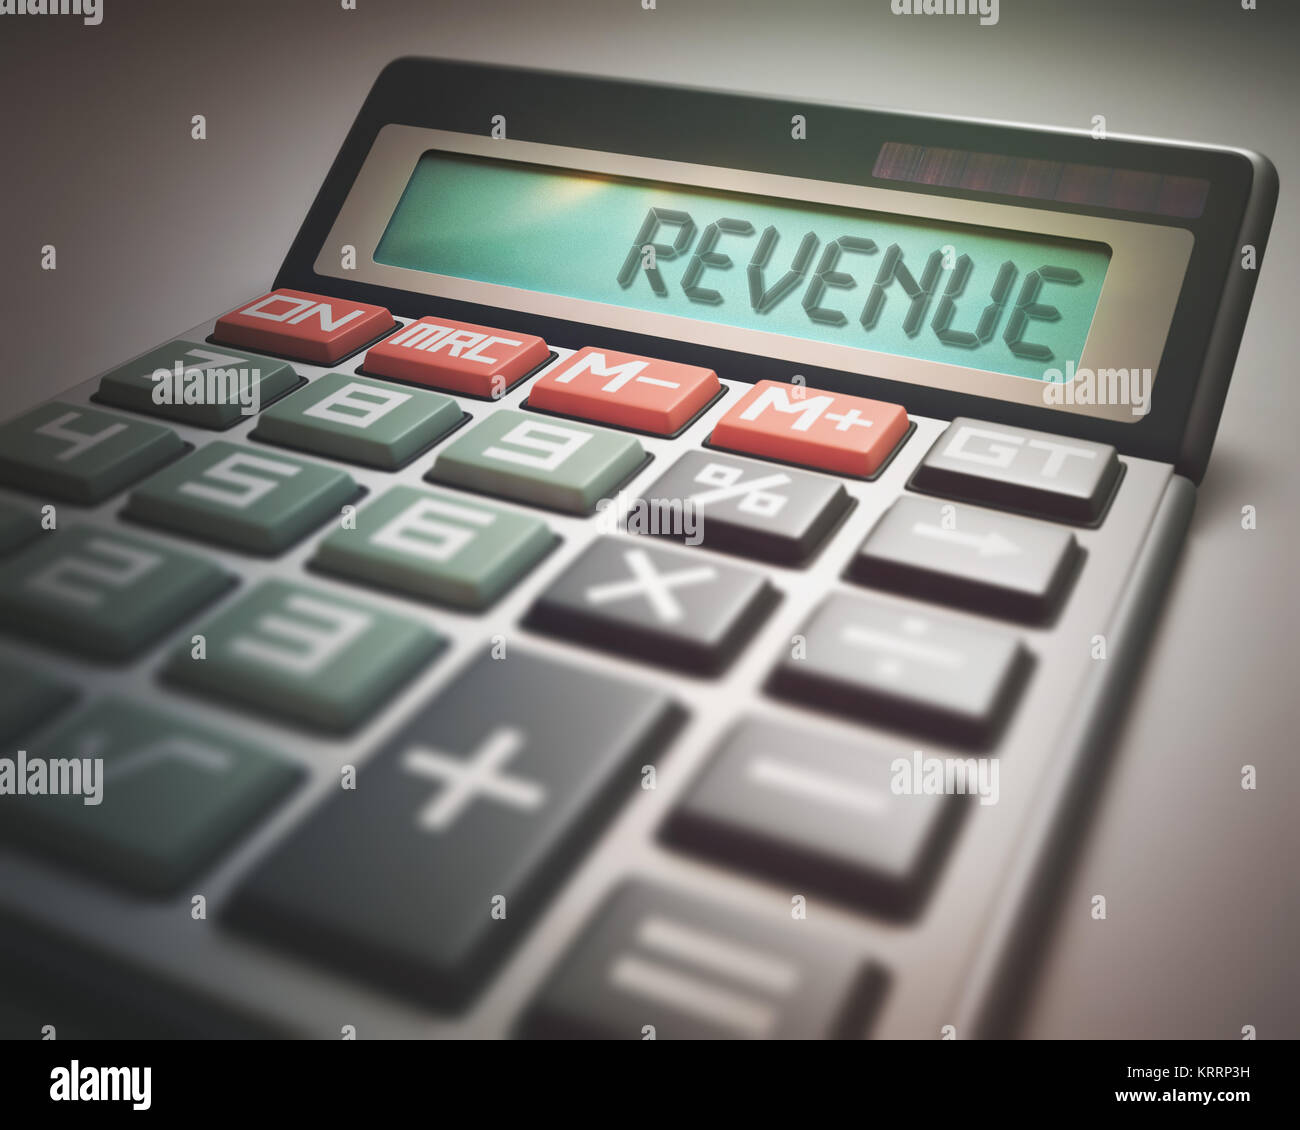 Revenue Calculator Stock Photo